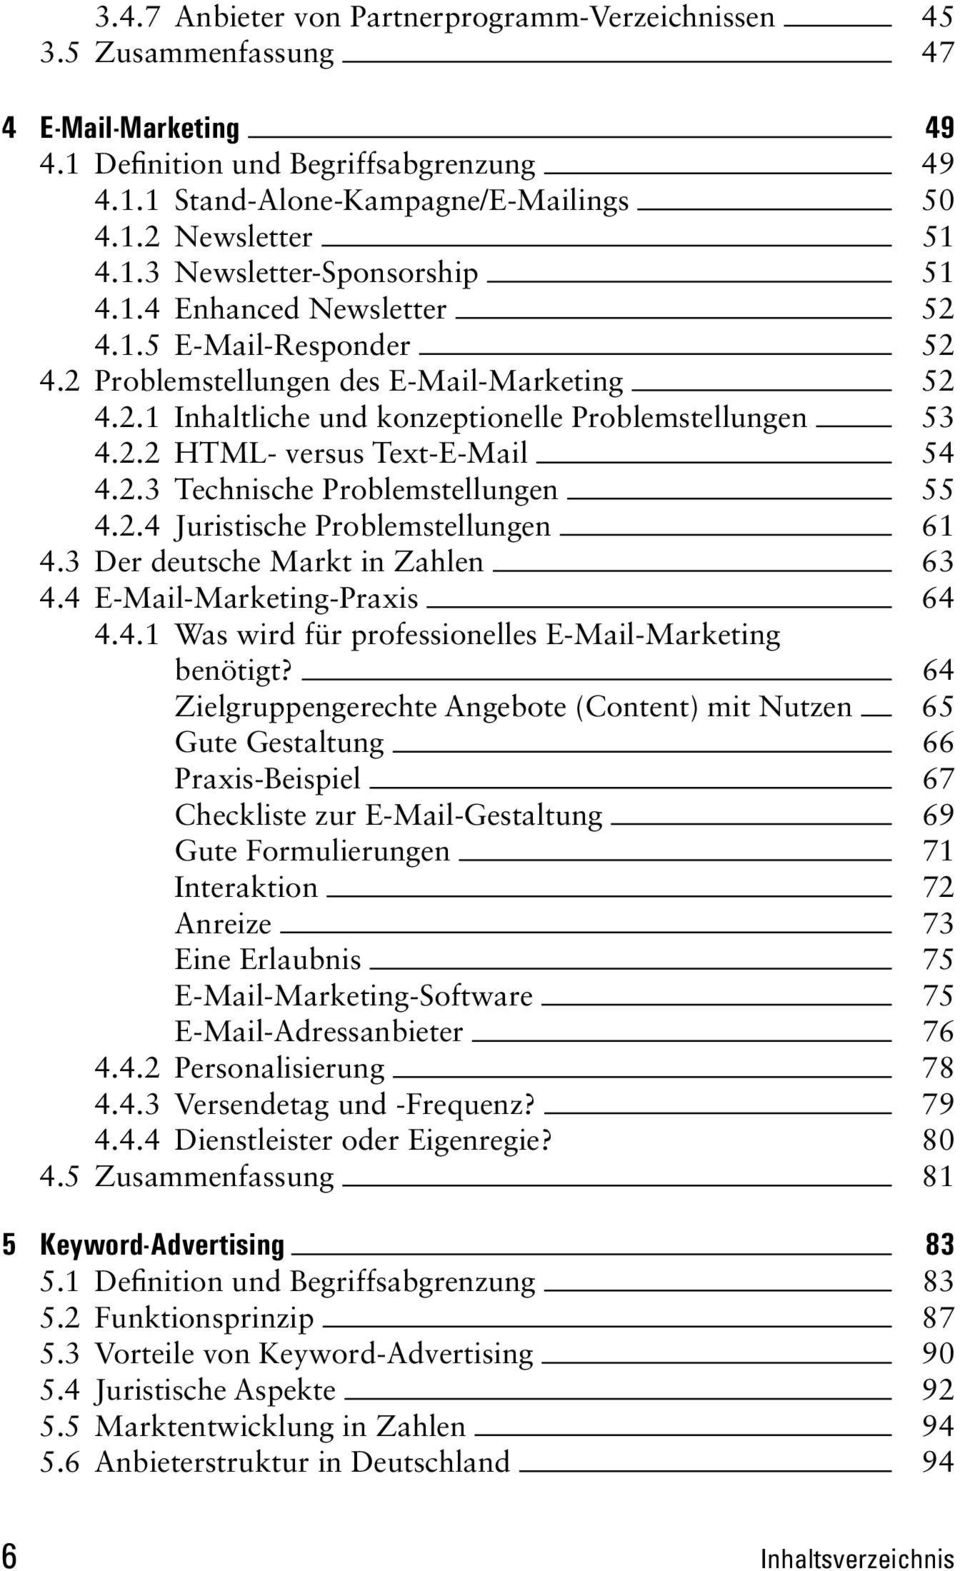 2.3 Technische Problemstellungen 55 4.2.4 Juristische Problemstellungen 61 4.3 Der deutsche Markt in Zahlen 63 4.4 E-Mail-Marketing-Praxis 64 4.4.1 Was wird für professionelles E-Mail-Marketing benötigt?